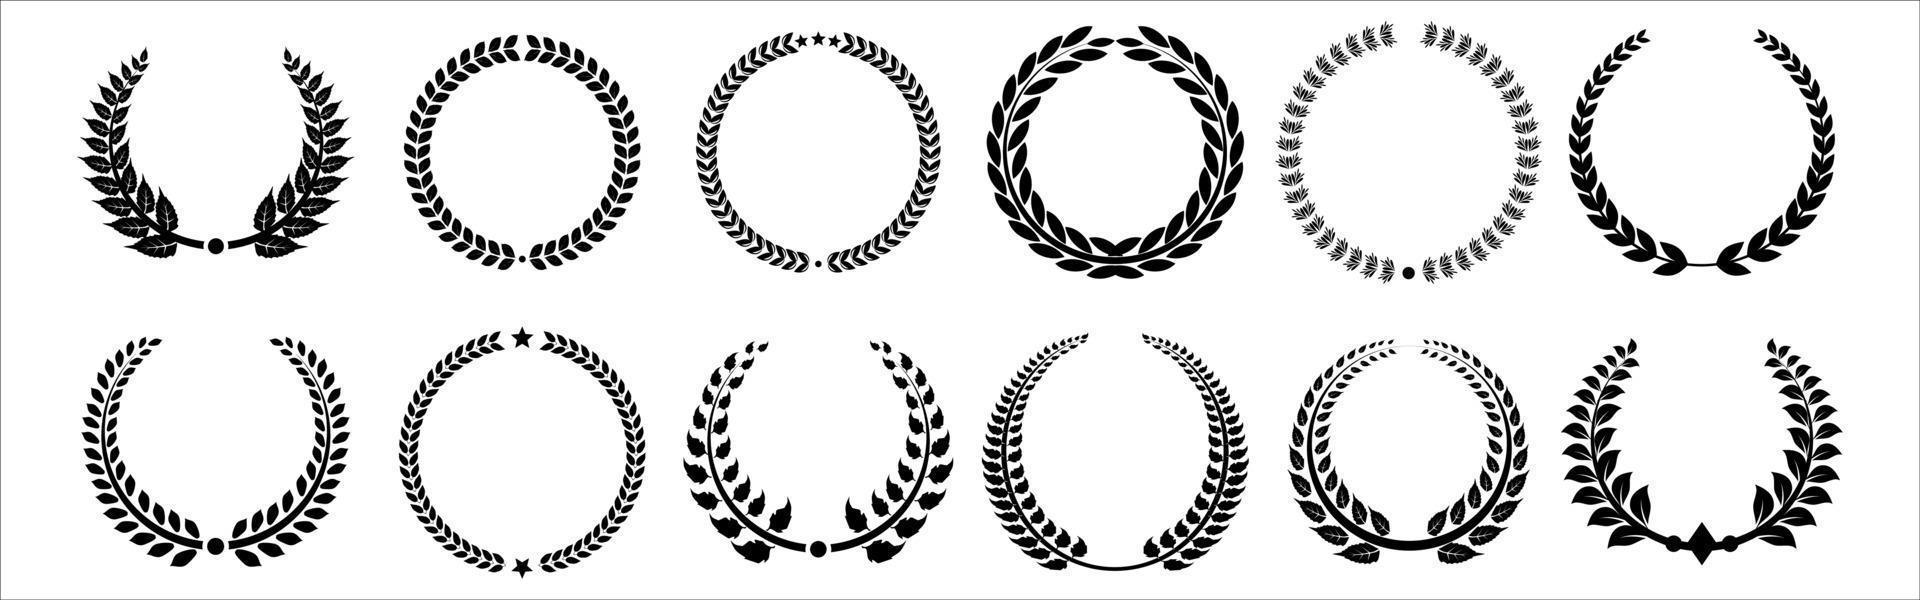 Set aus schwarzen und weißen Silhouetten, kreisförmigen Lorbeerblättern und Eichenkränzen, die eine Auszeichnung, Leistung, Heraldik, Adel darstellen. vektor